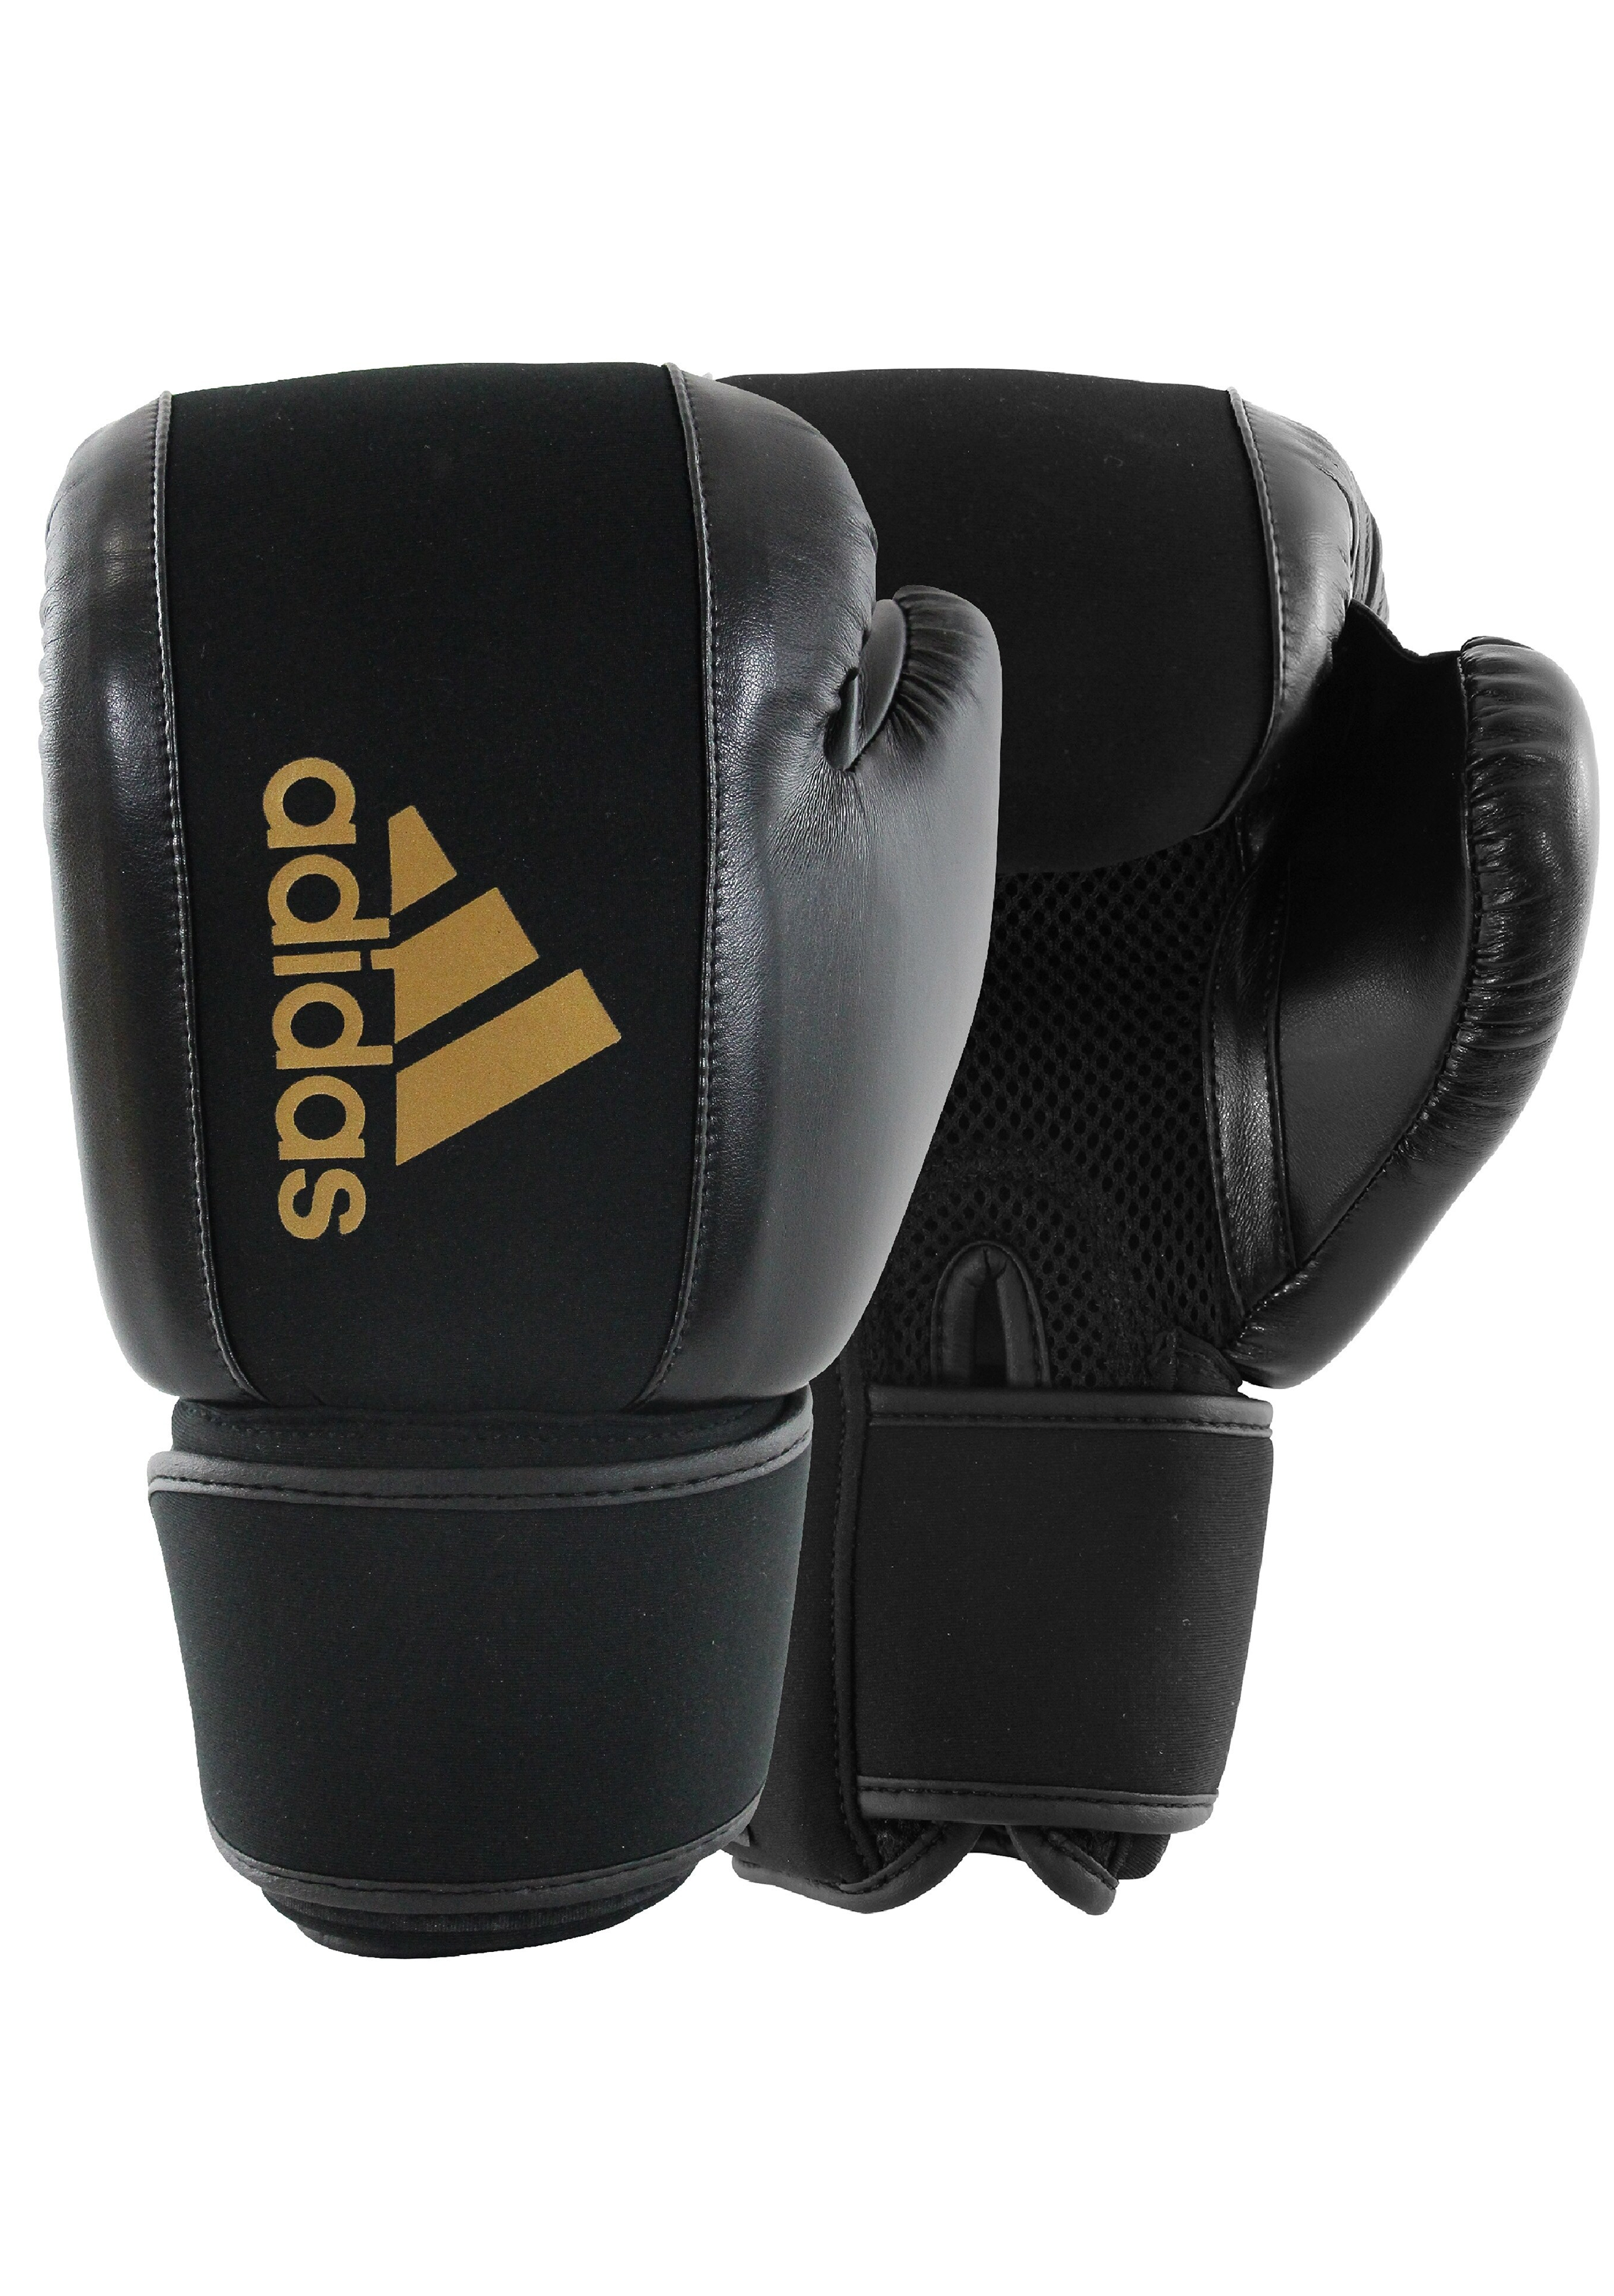 Adidas Unisex Washable Boxing Glove ADIHBWG01 BLACK/GOLD – Jim Kidd Sports | Boxhandschuhe